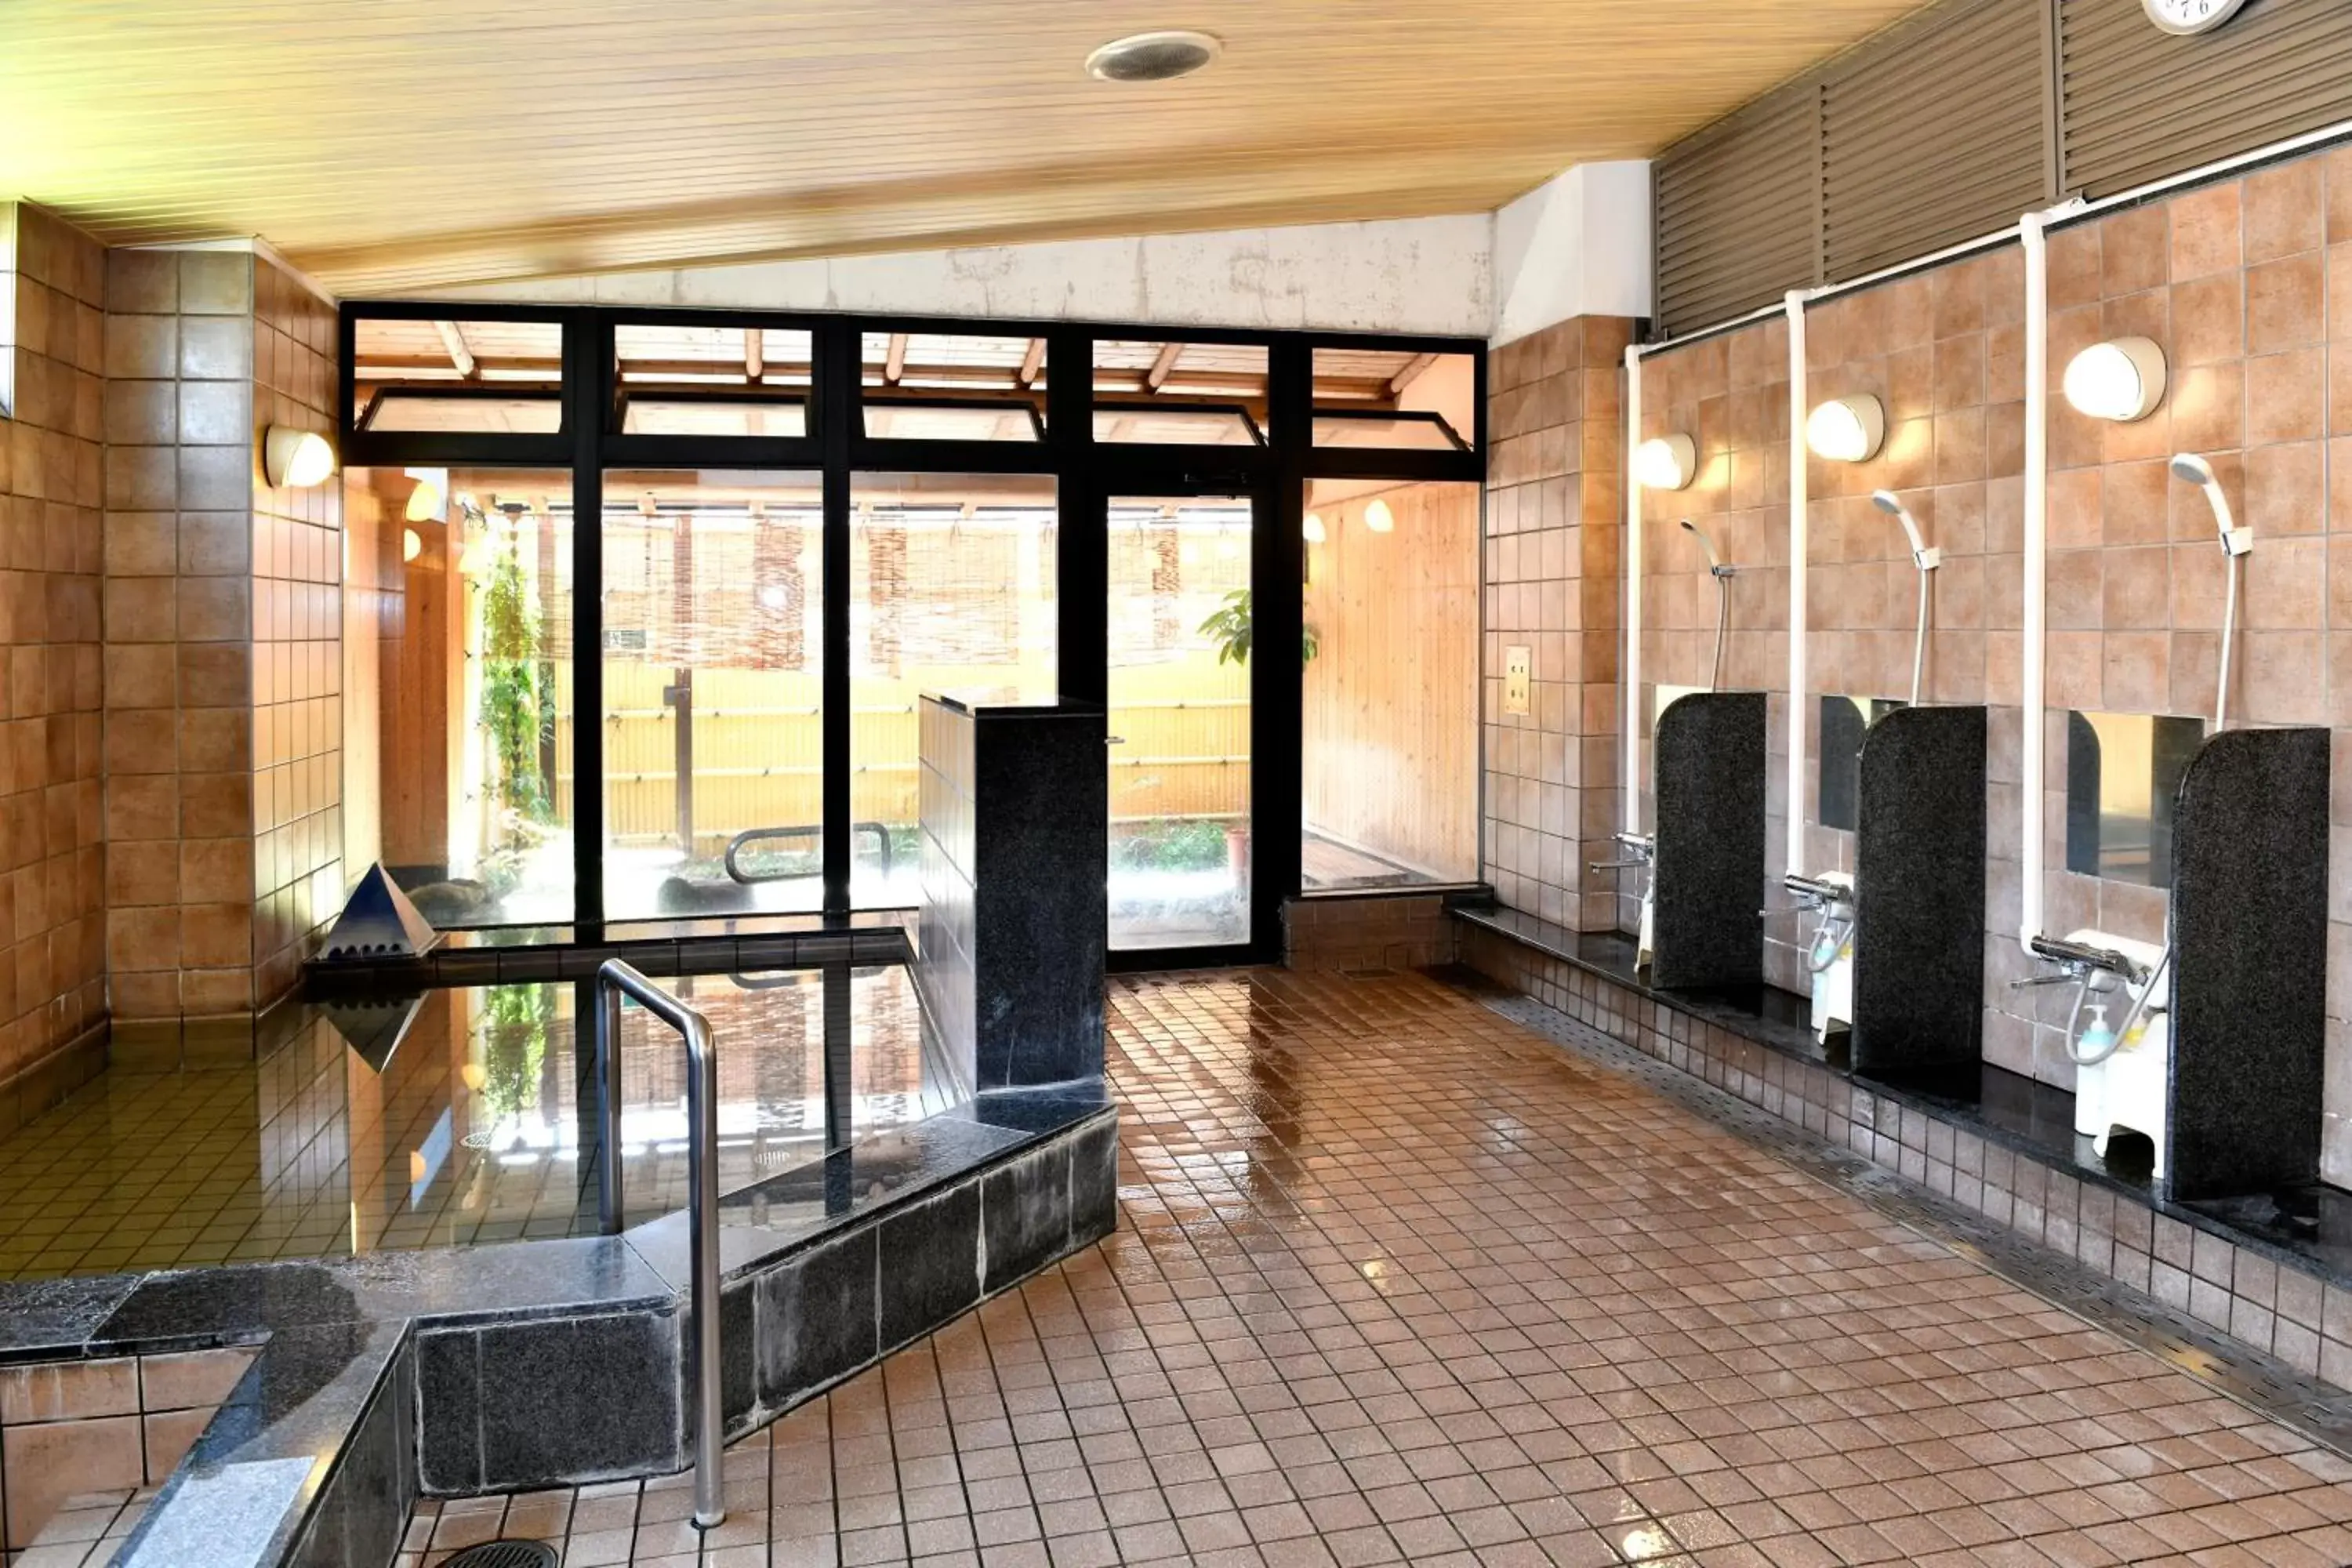 Area and facilities in New Commander Hotel Osaka Neyagawa